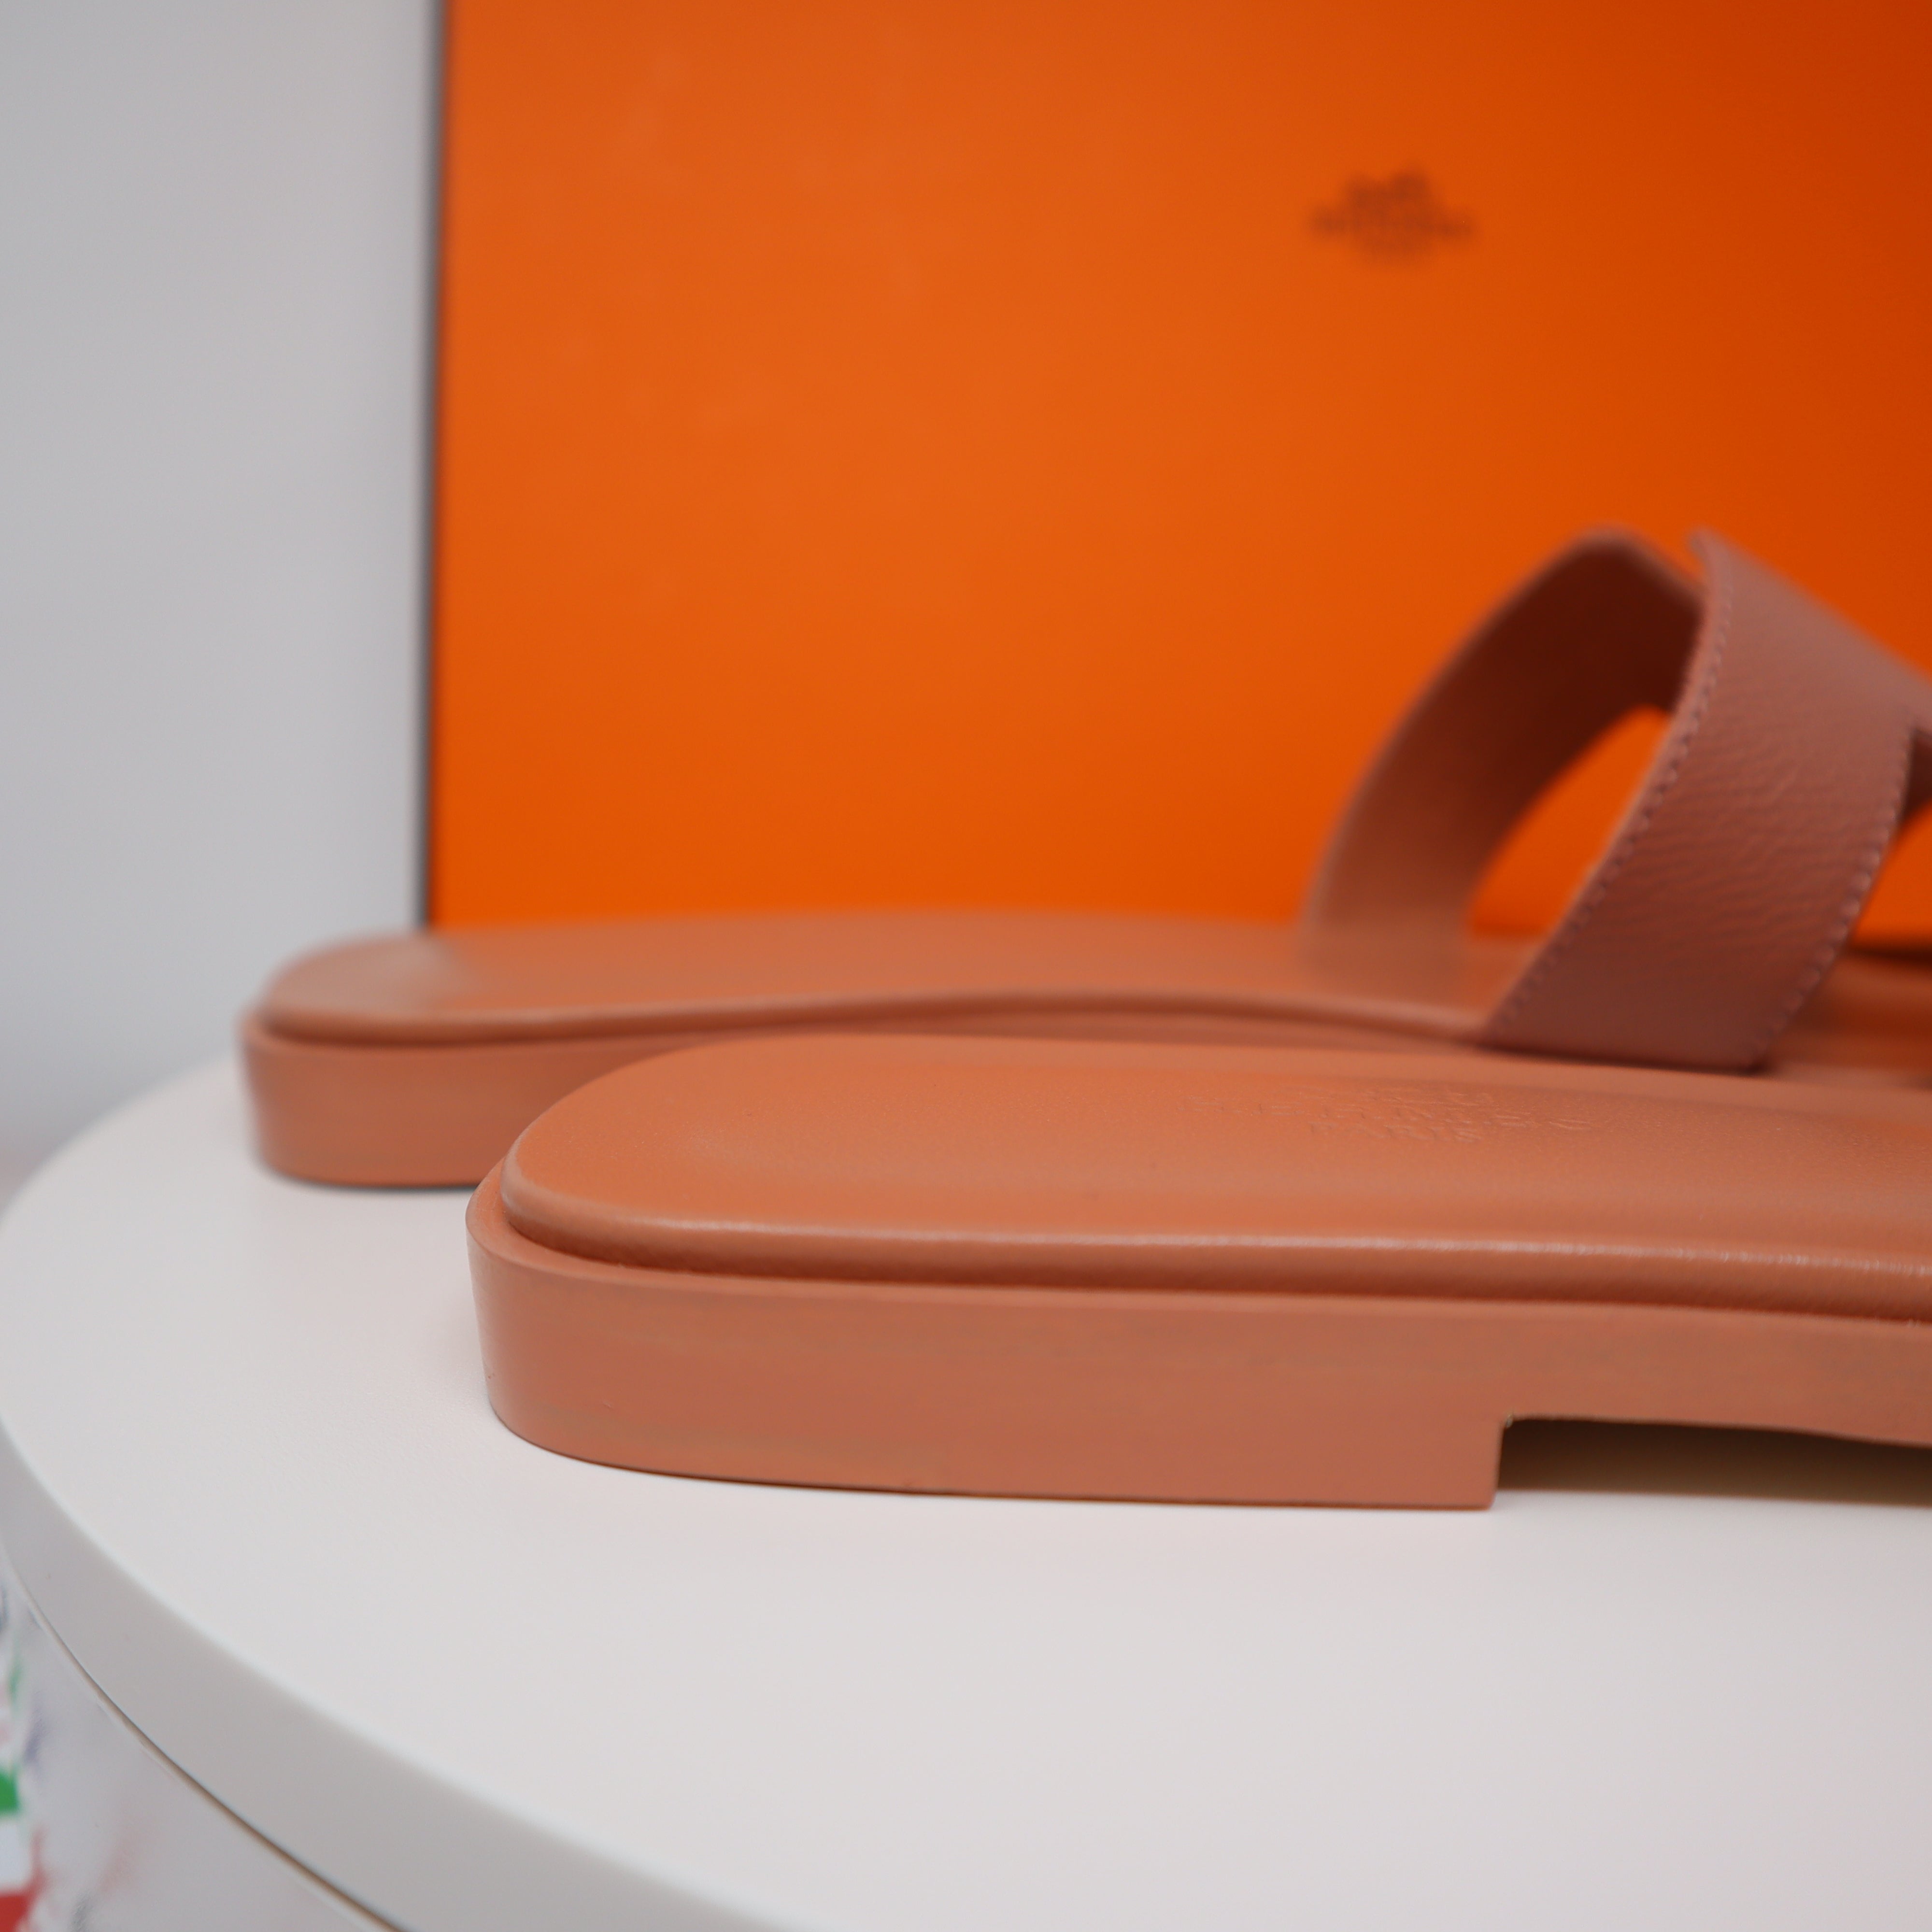 Oran Sandals (Rose Pètale) Size 36 – The Glam Zone PH